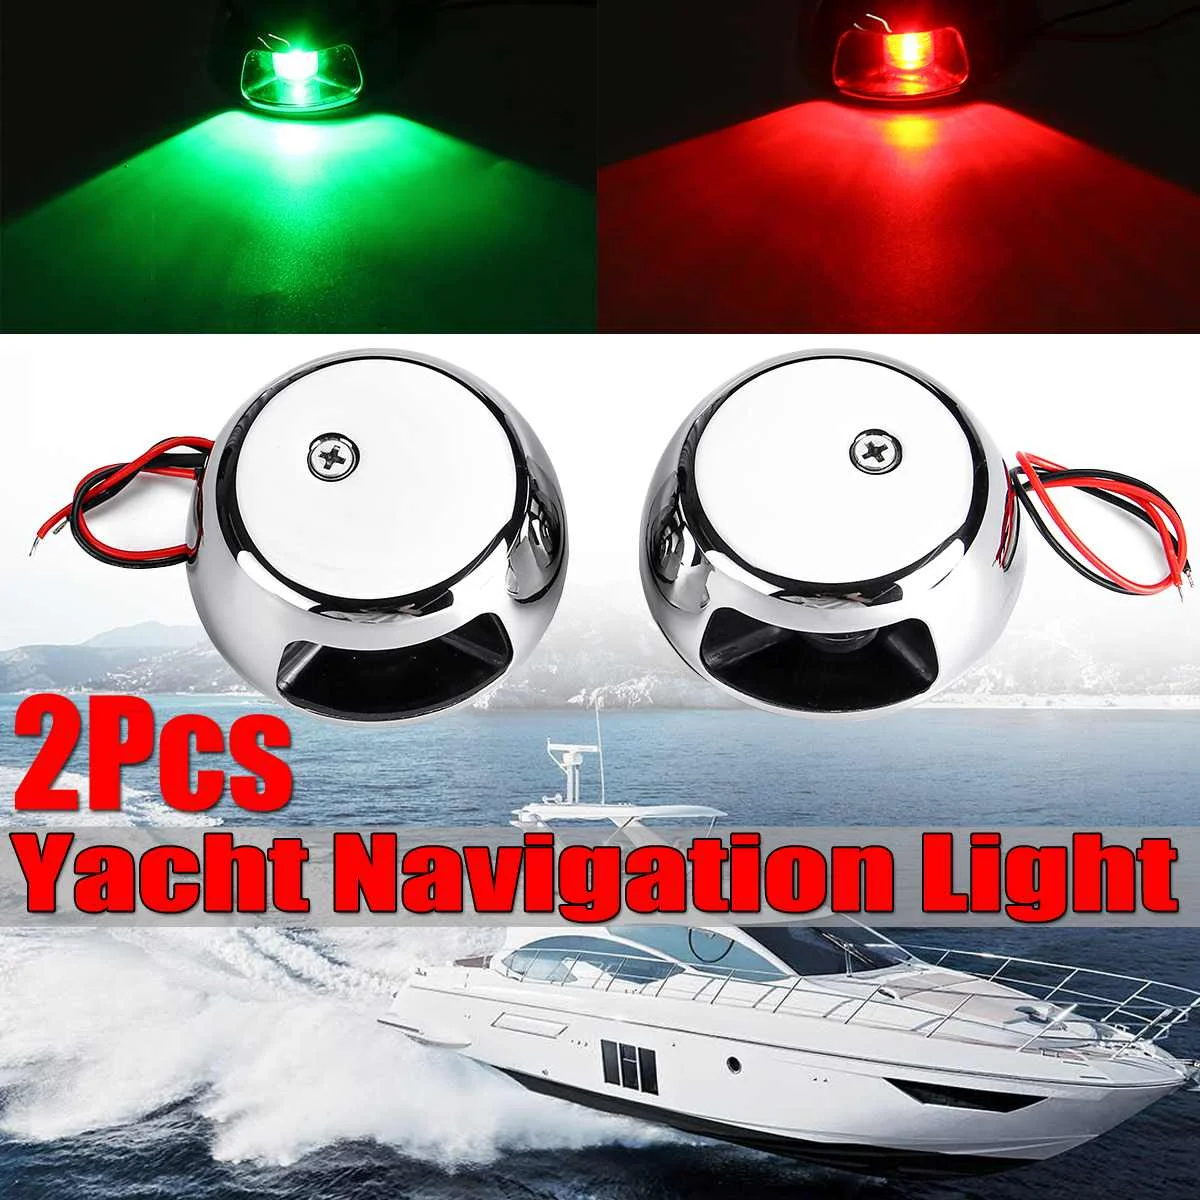 2 шт. 12V Светодиодный свет светодиодный навигационный свет лампы E011006 для морской катер яхты правый Нержавеющая сталь красный зеленый свет 12В лодке